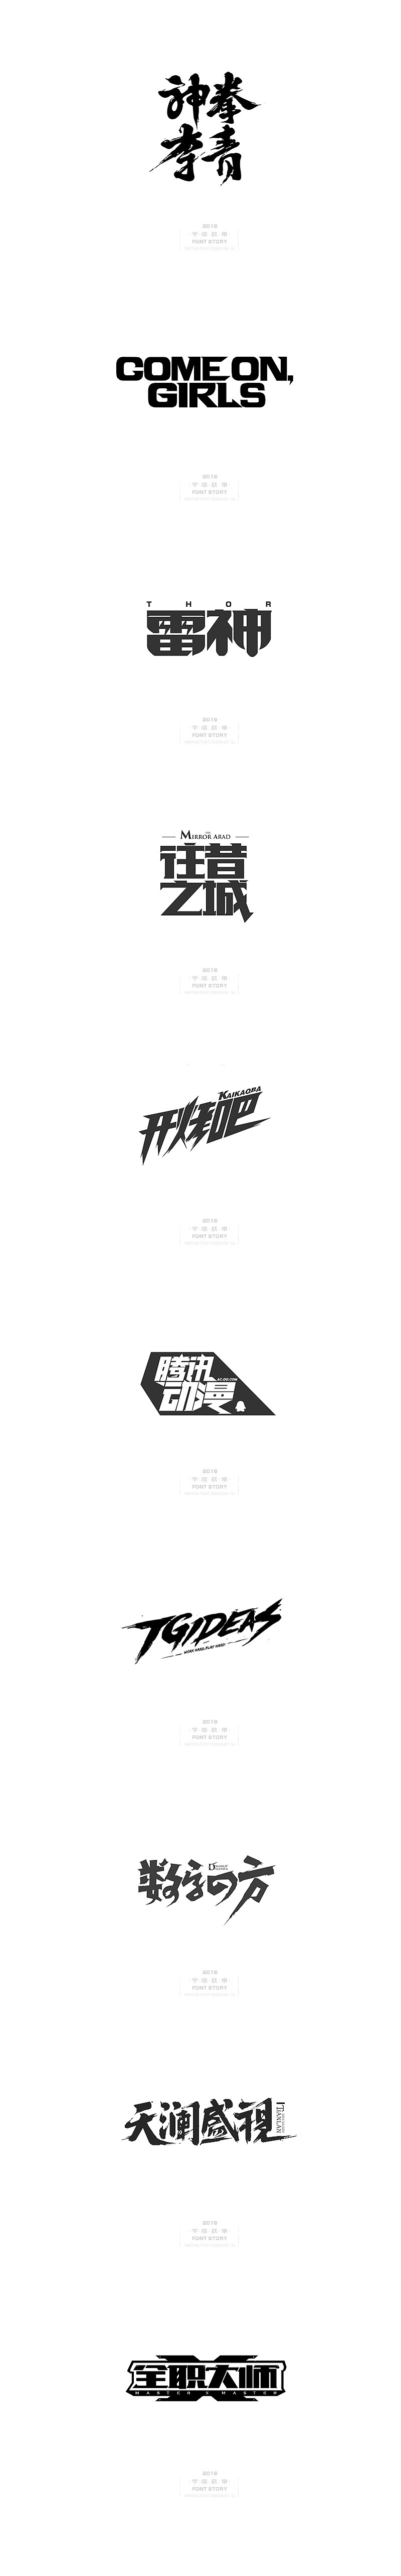 腾讯设计师郭亮的中国风手绘字体作品欣赏